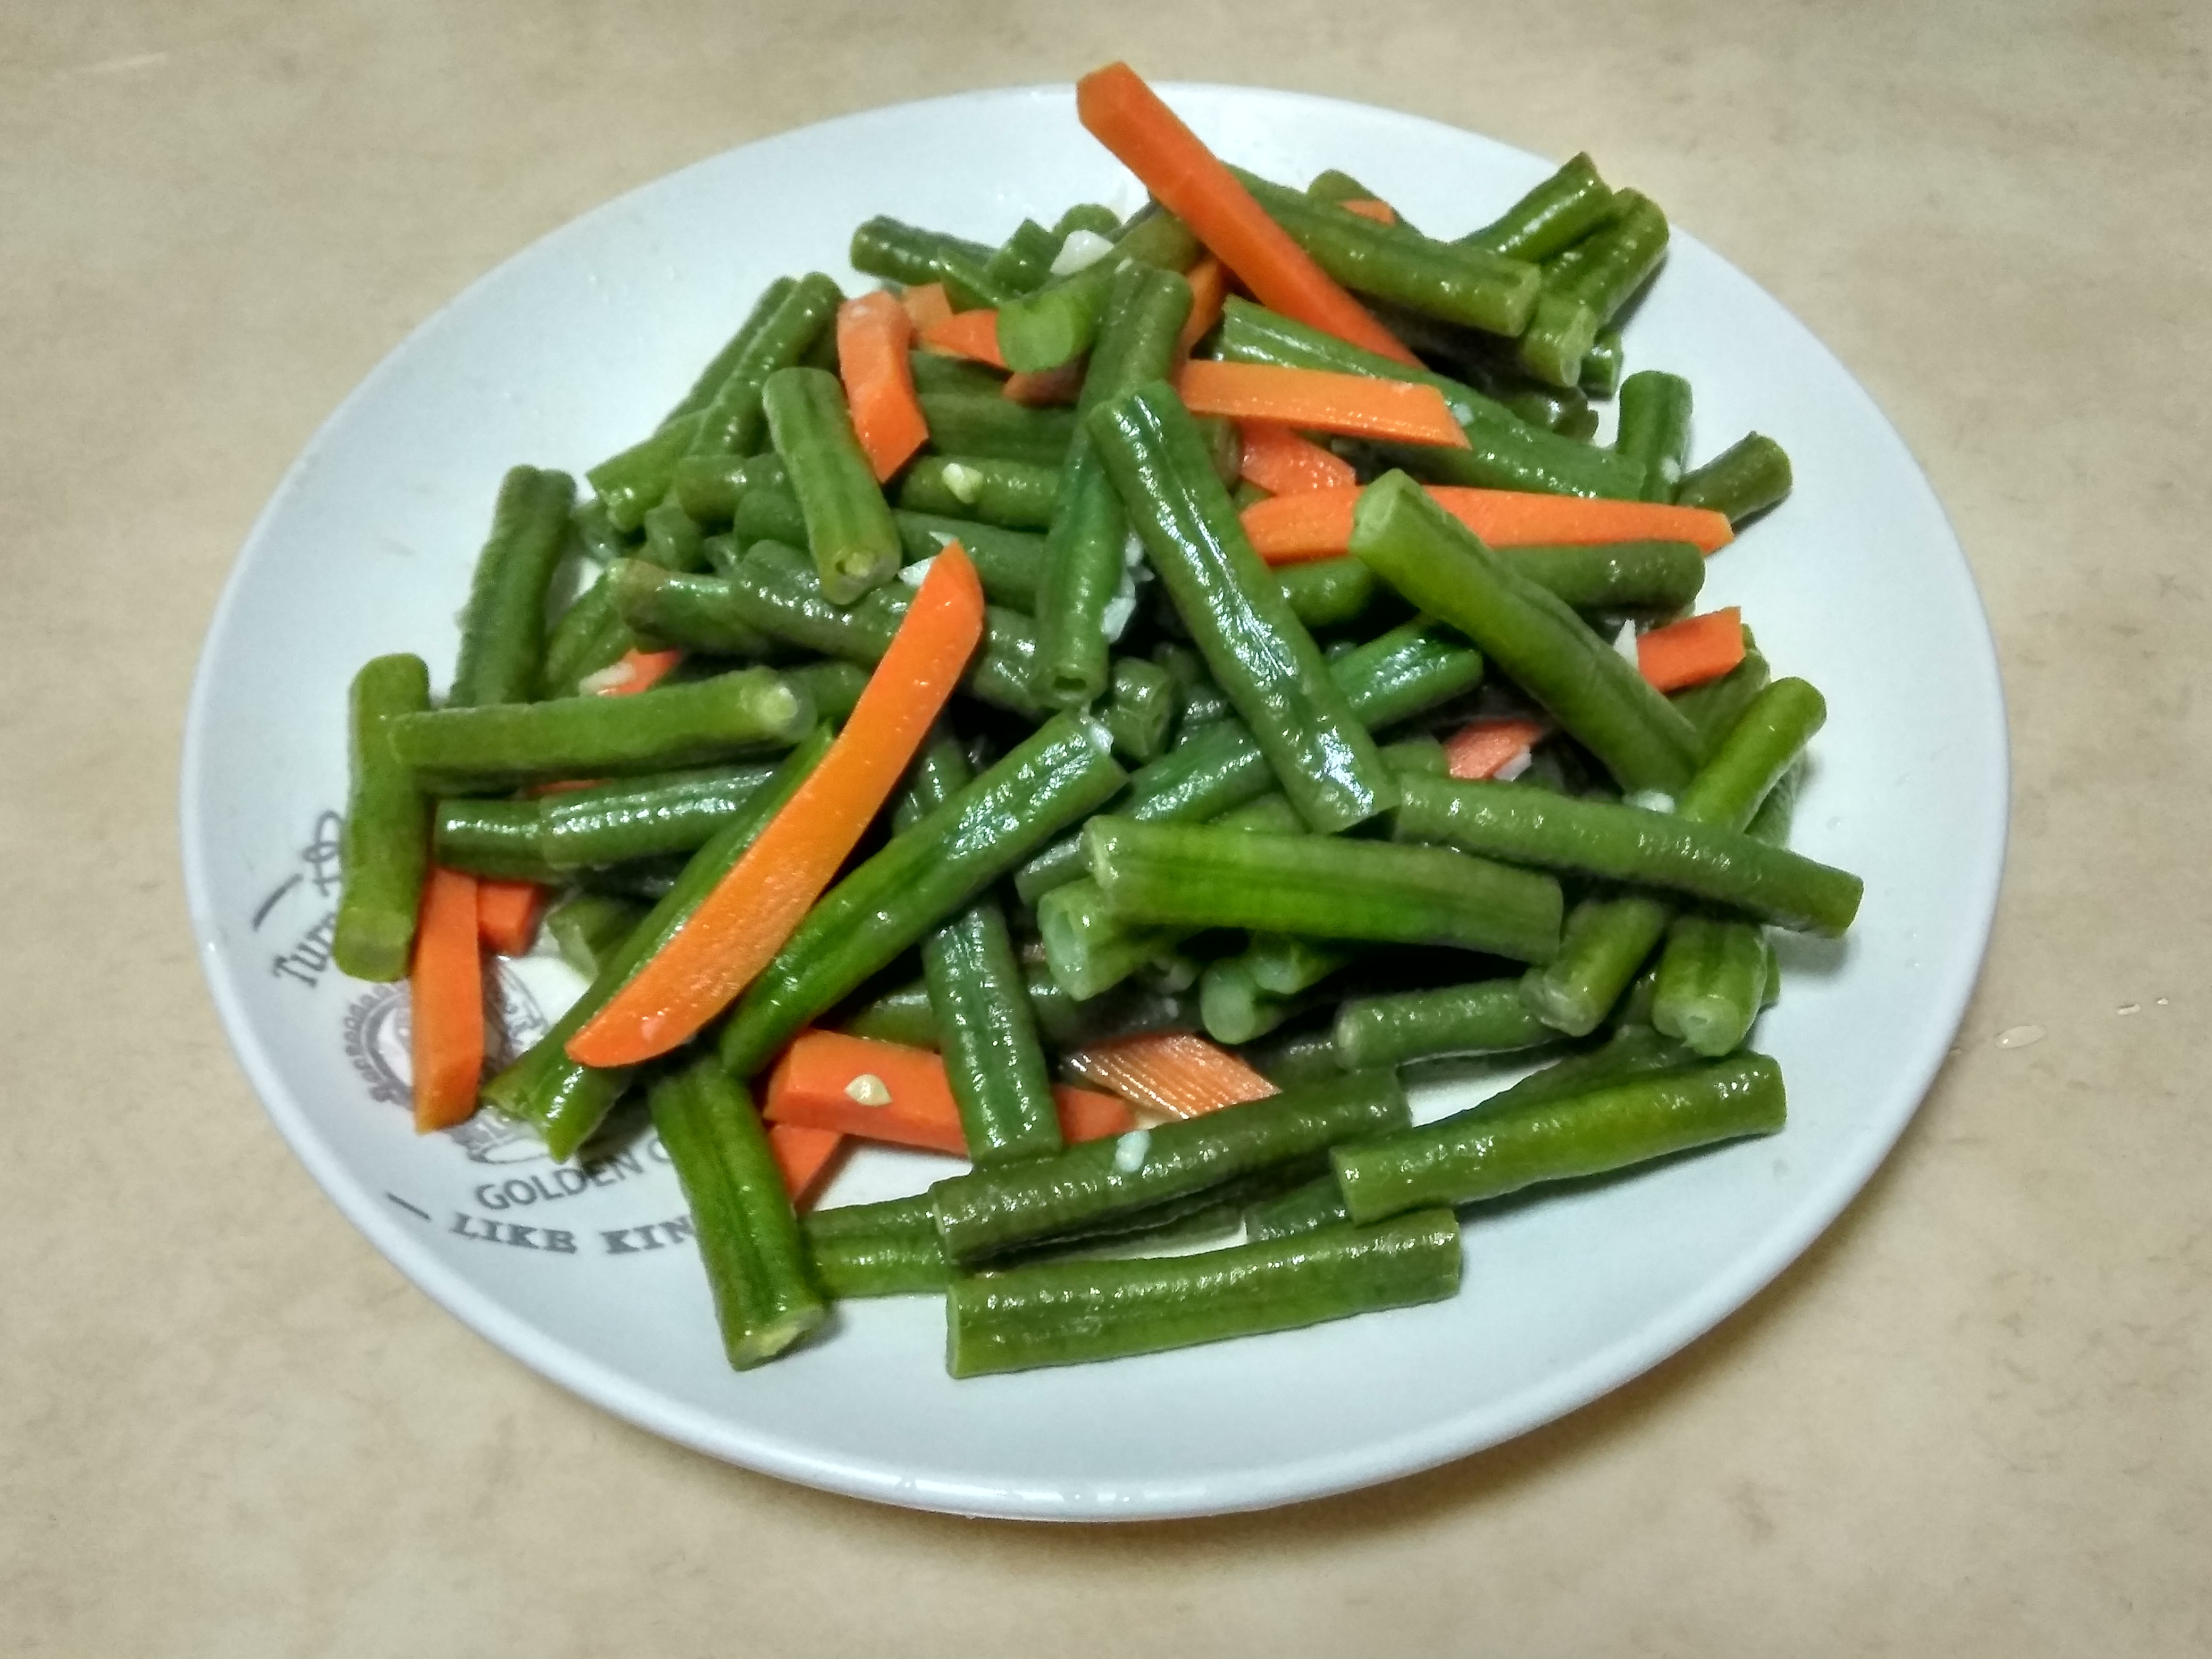 木箱中的菜豆、绿豆或肾豆 库存图片. 图片 包括有 本质, 蛋白质, 一堆, 原始, 背包, 市场, 饮食 - 166585977